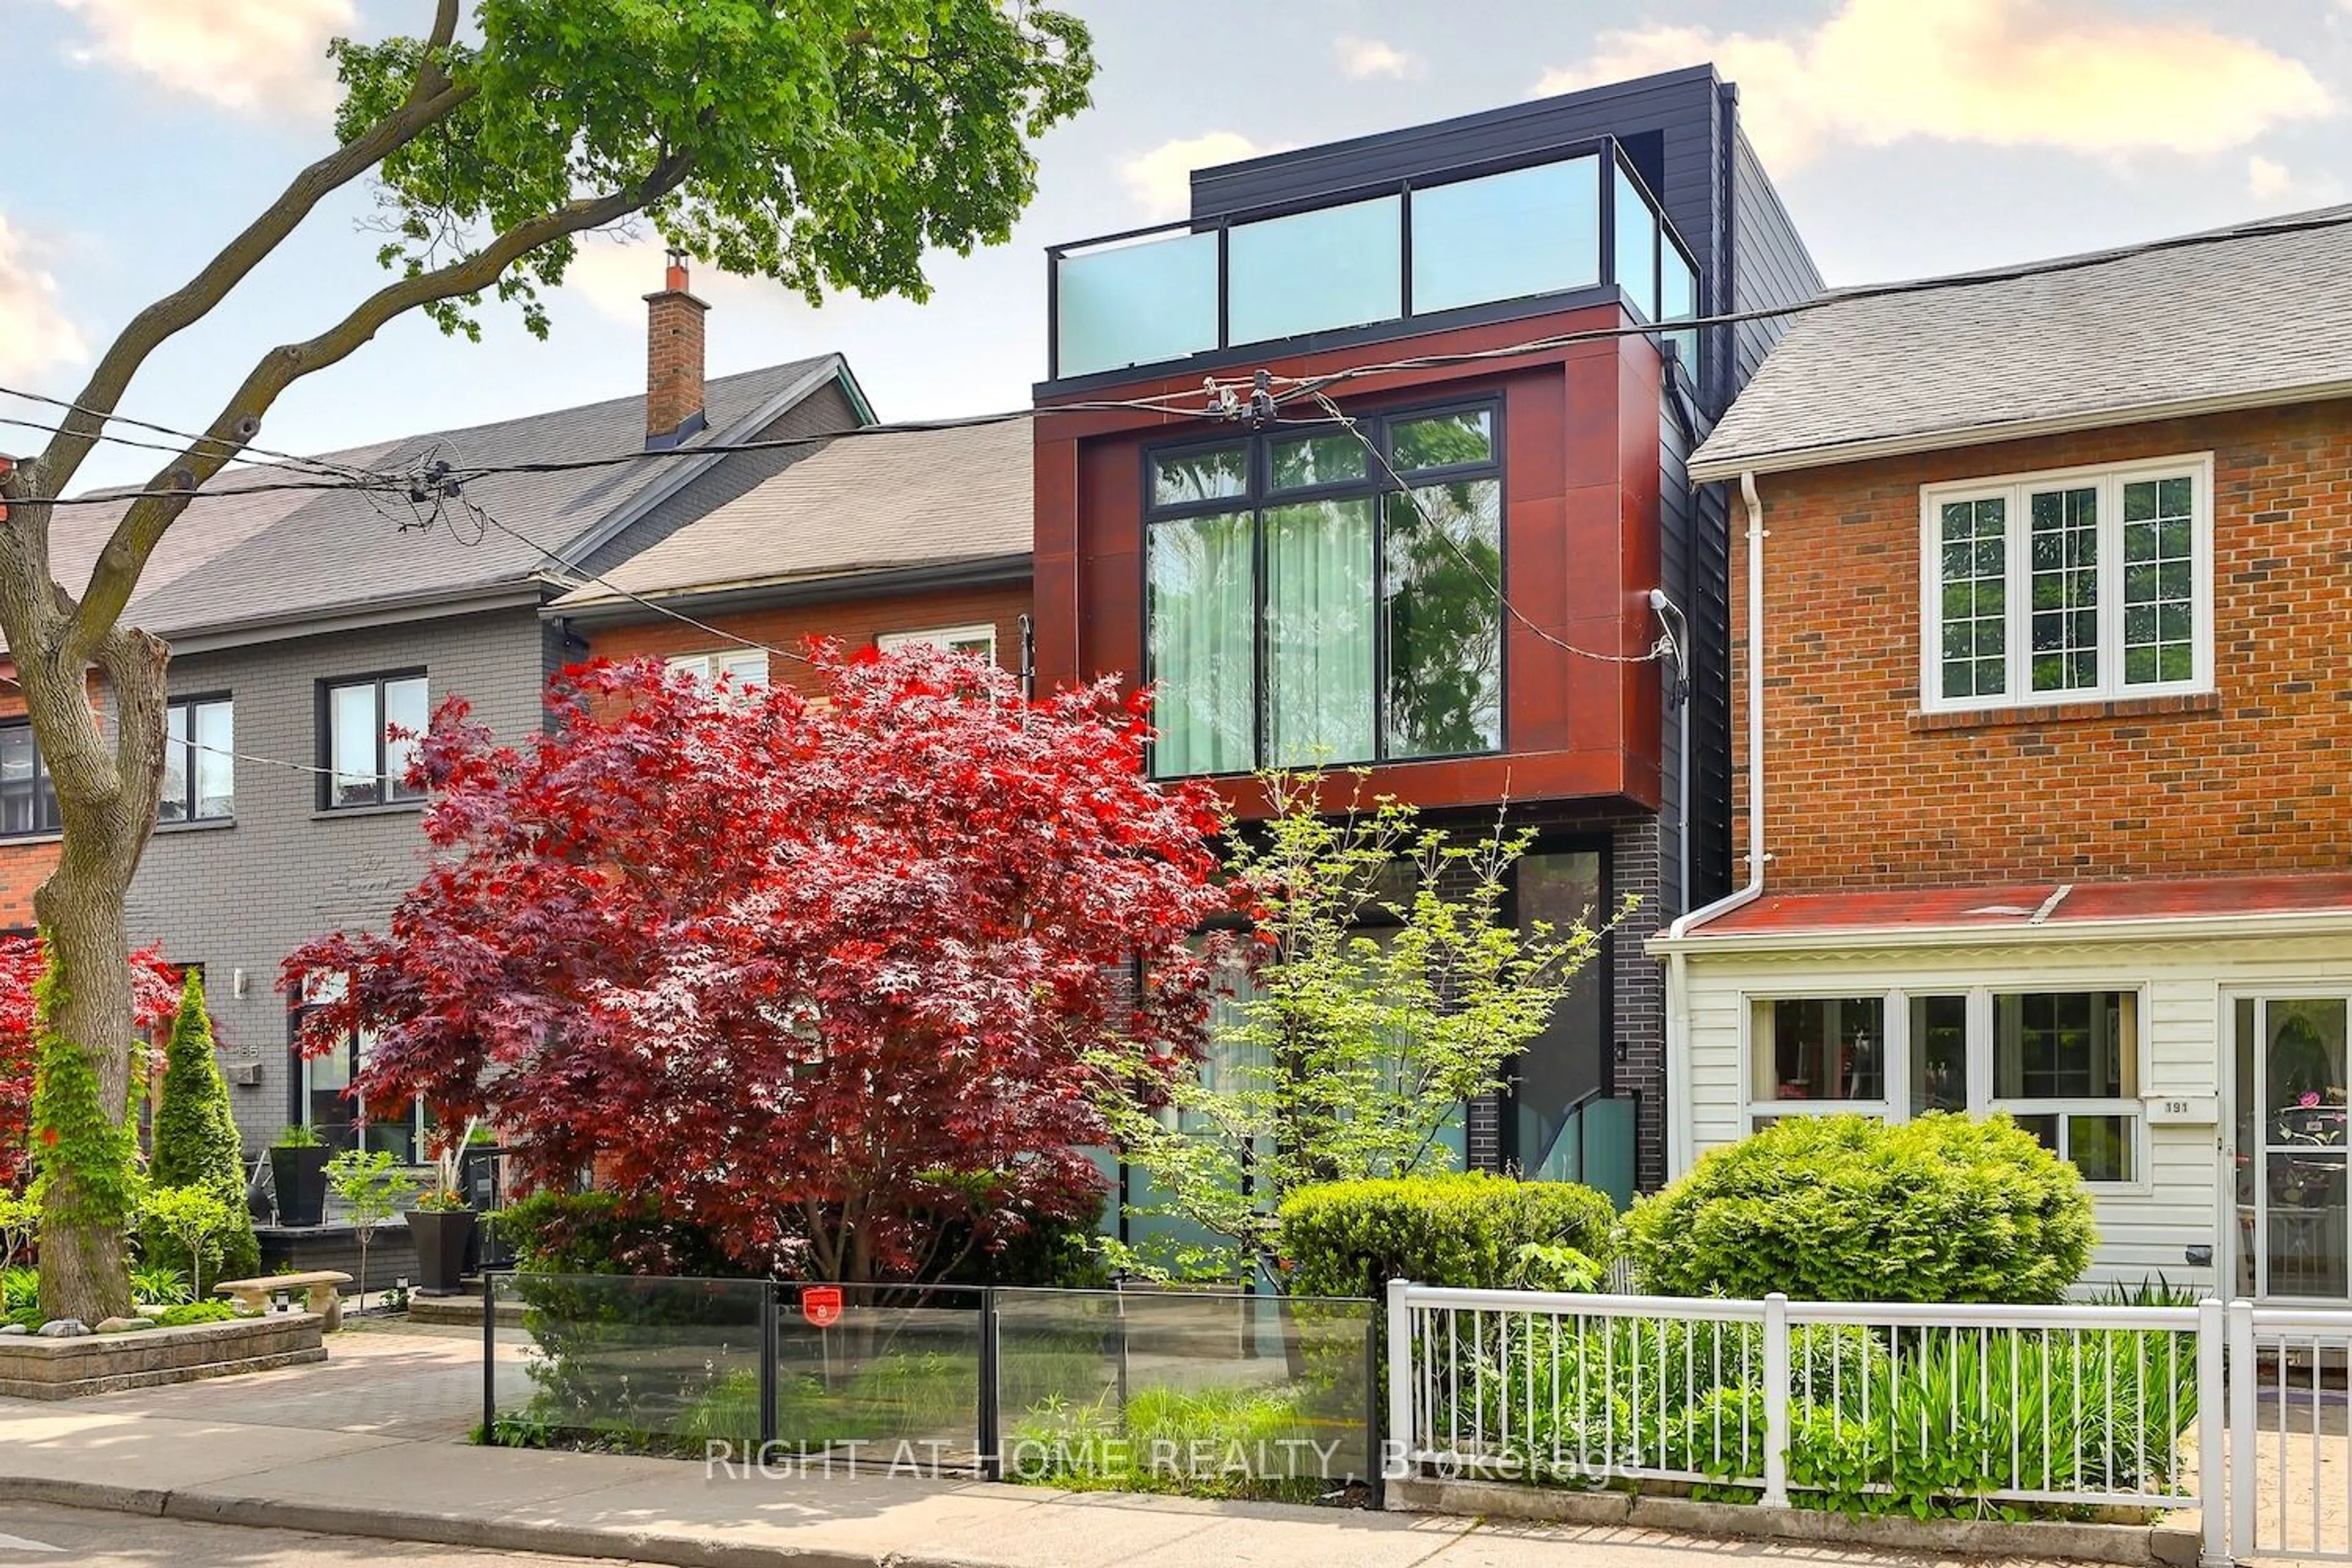 Home with brick exterior material for 189 Argyle St, Toronto Ontario M6J 1P5